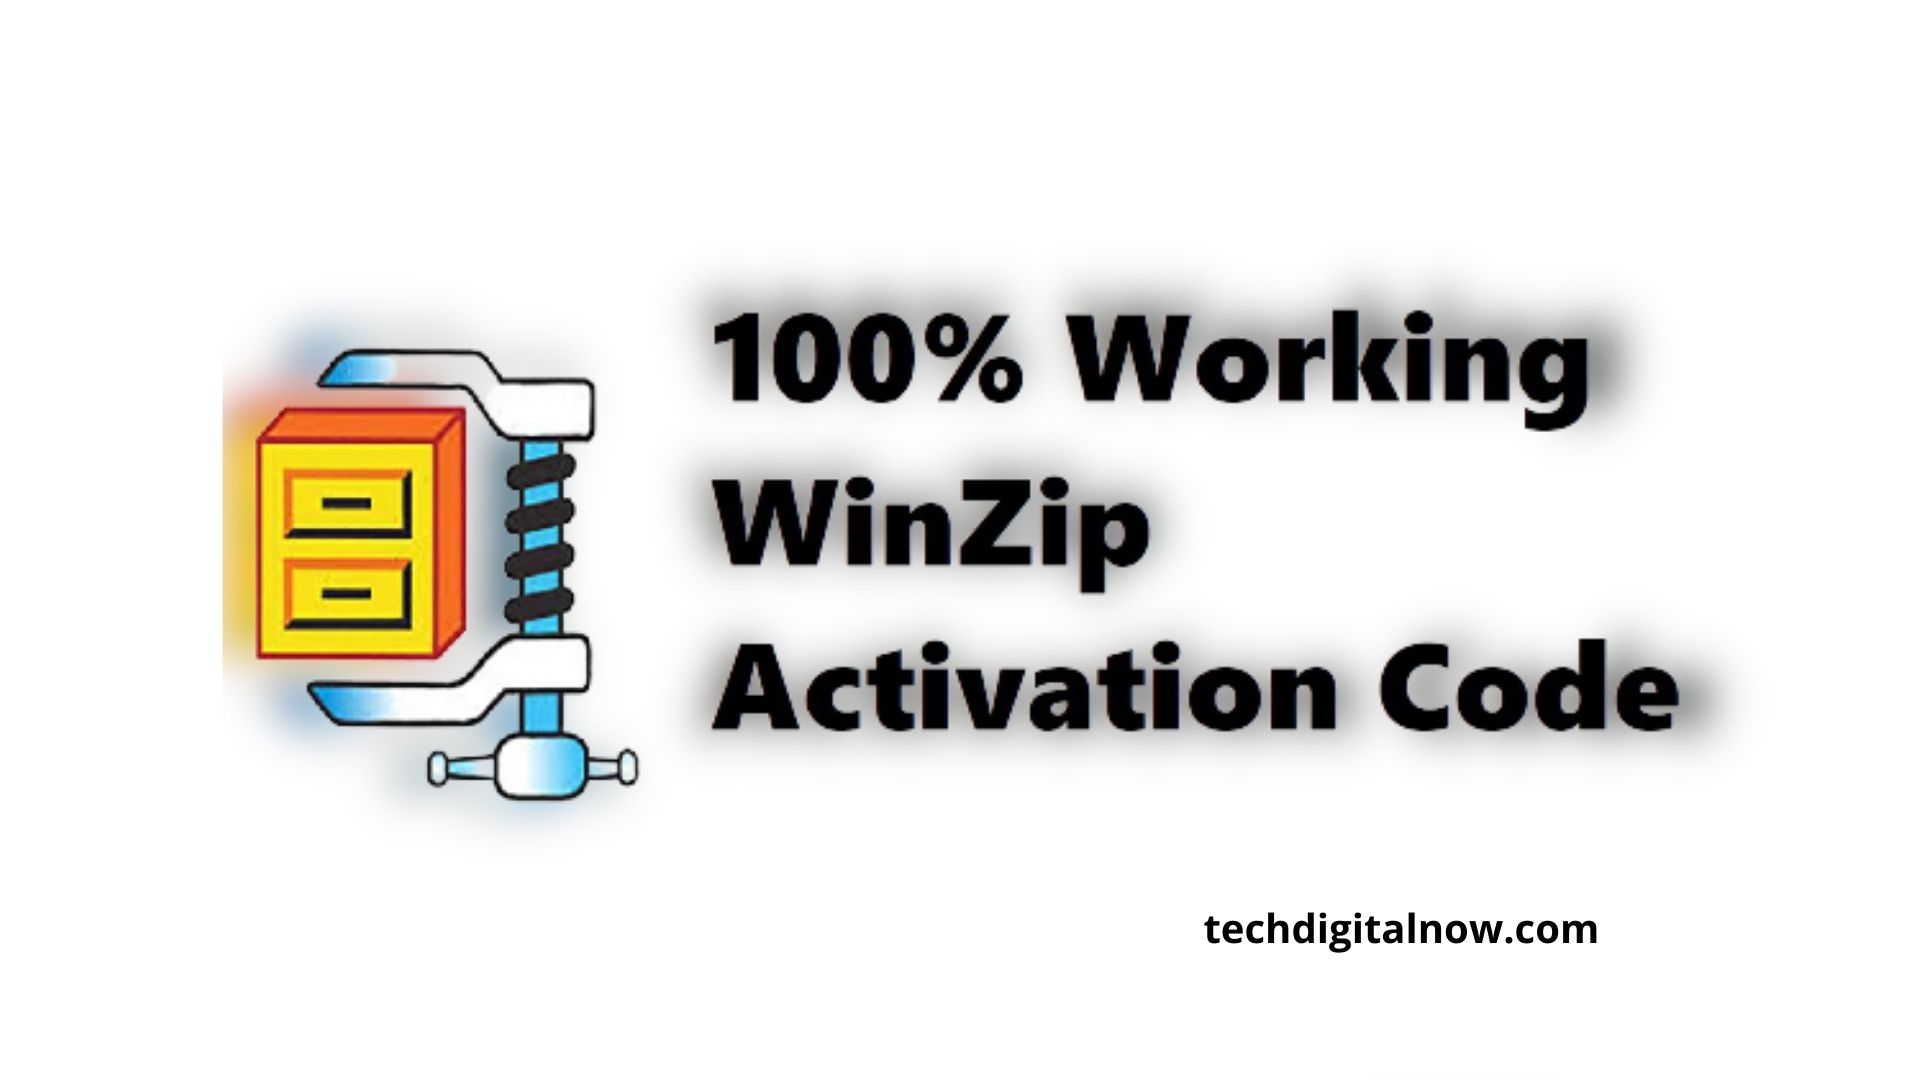 winzip 14.5 activation code free download